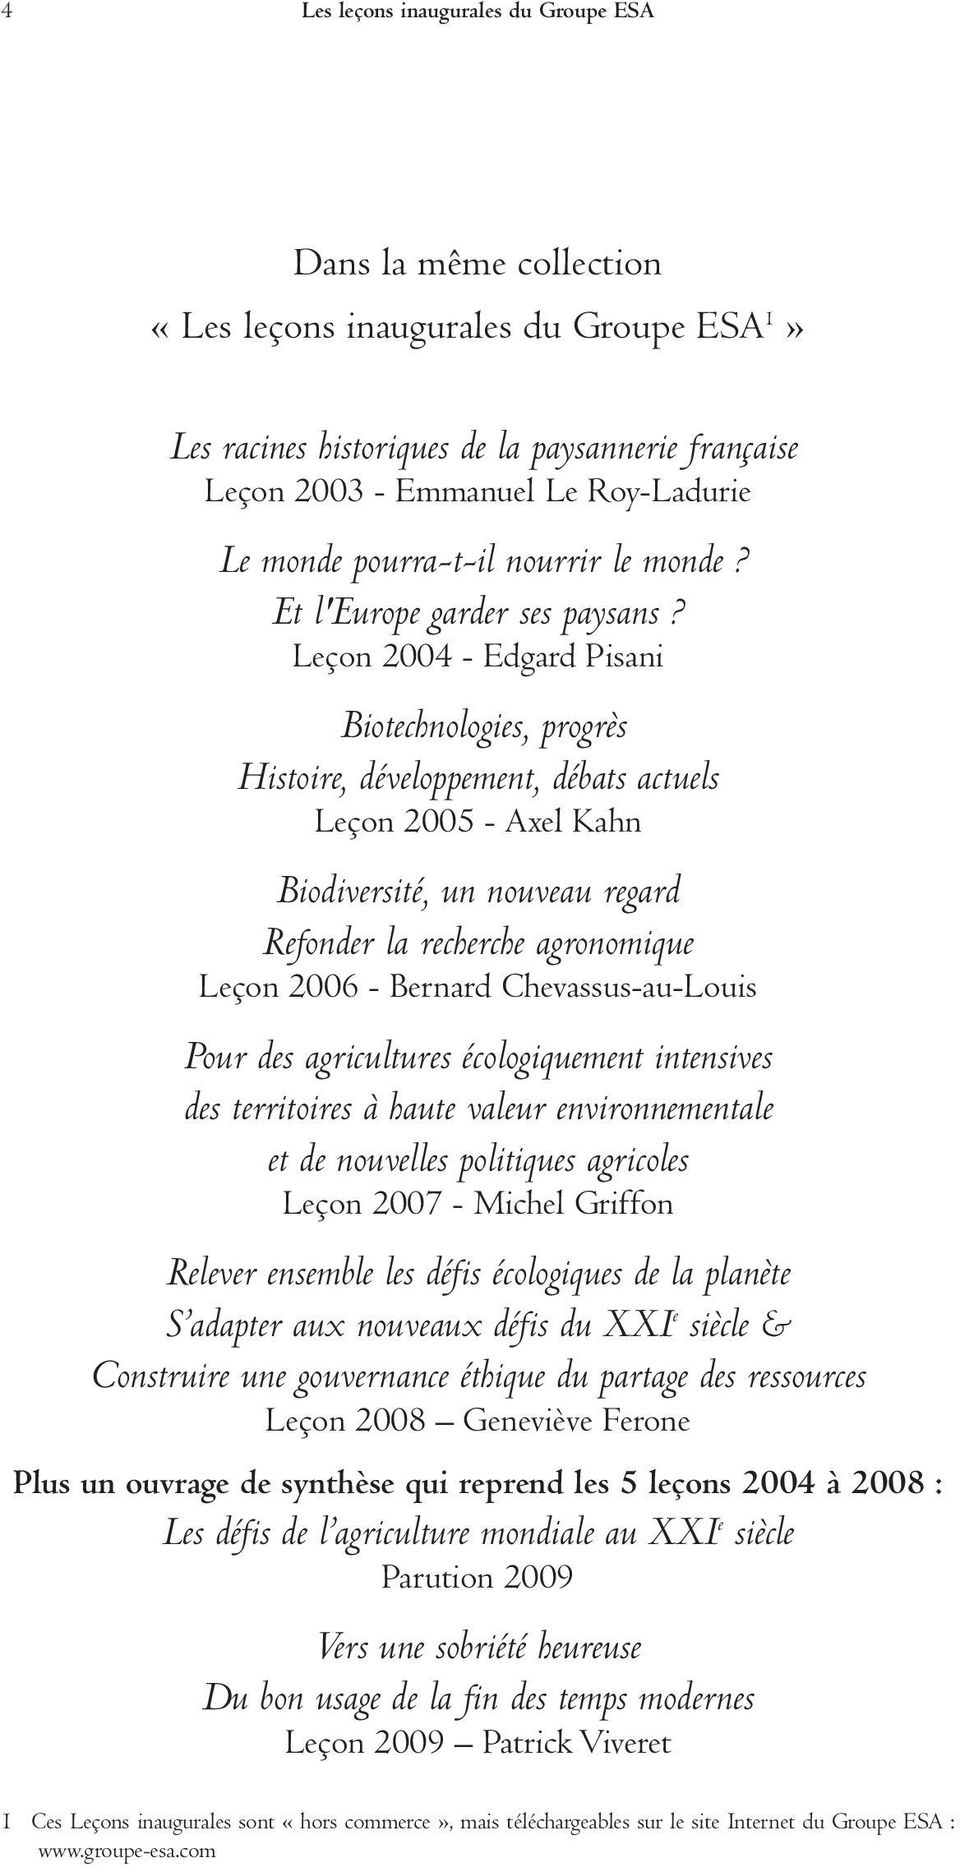 Leçon 2004 - Edgard Pisani Biotechnologies, progrès Histoire, développement, débats actuels Leçon 2005 - Axel Kahn Biodiversité, un nouveau regard Refonder la recherche agronomique Leçon 2006 -